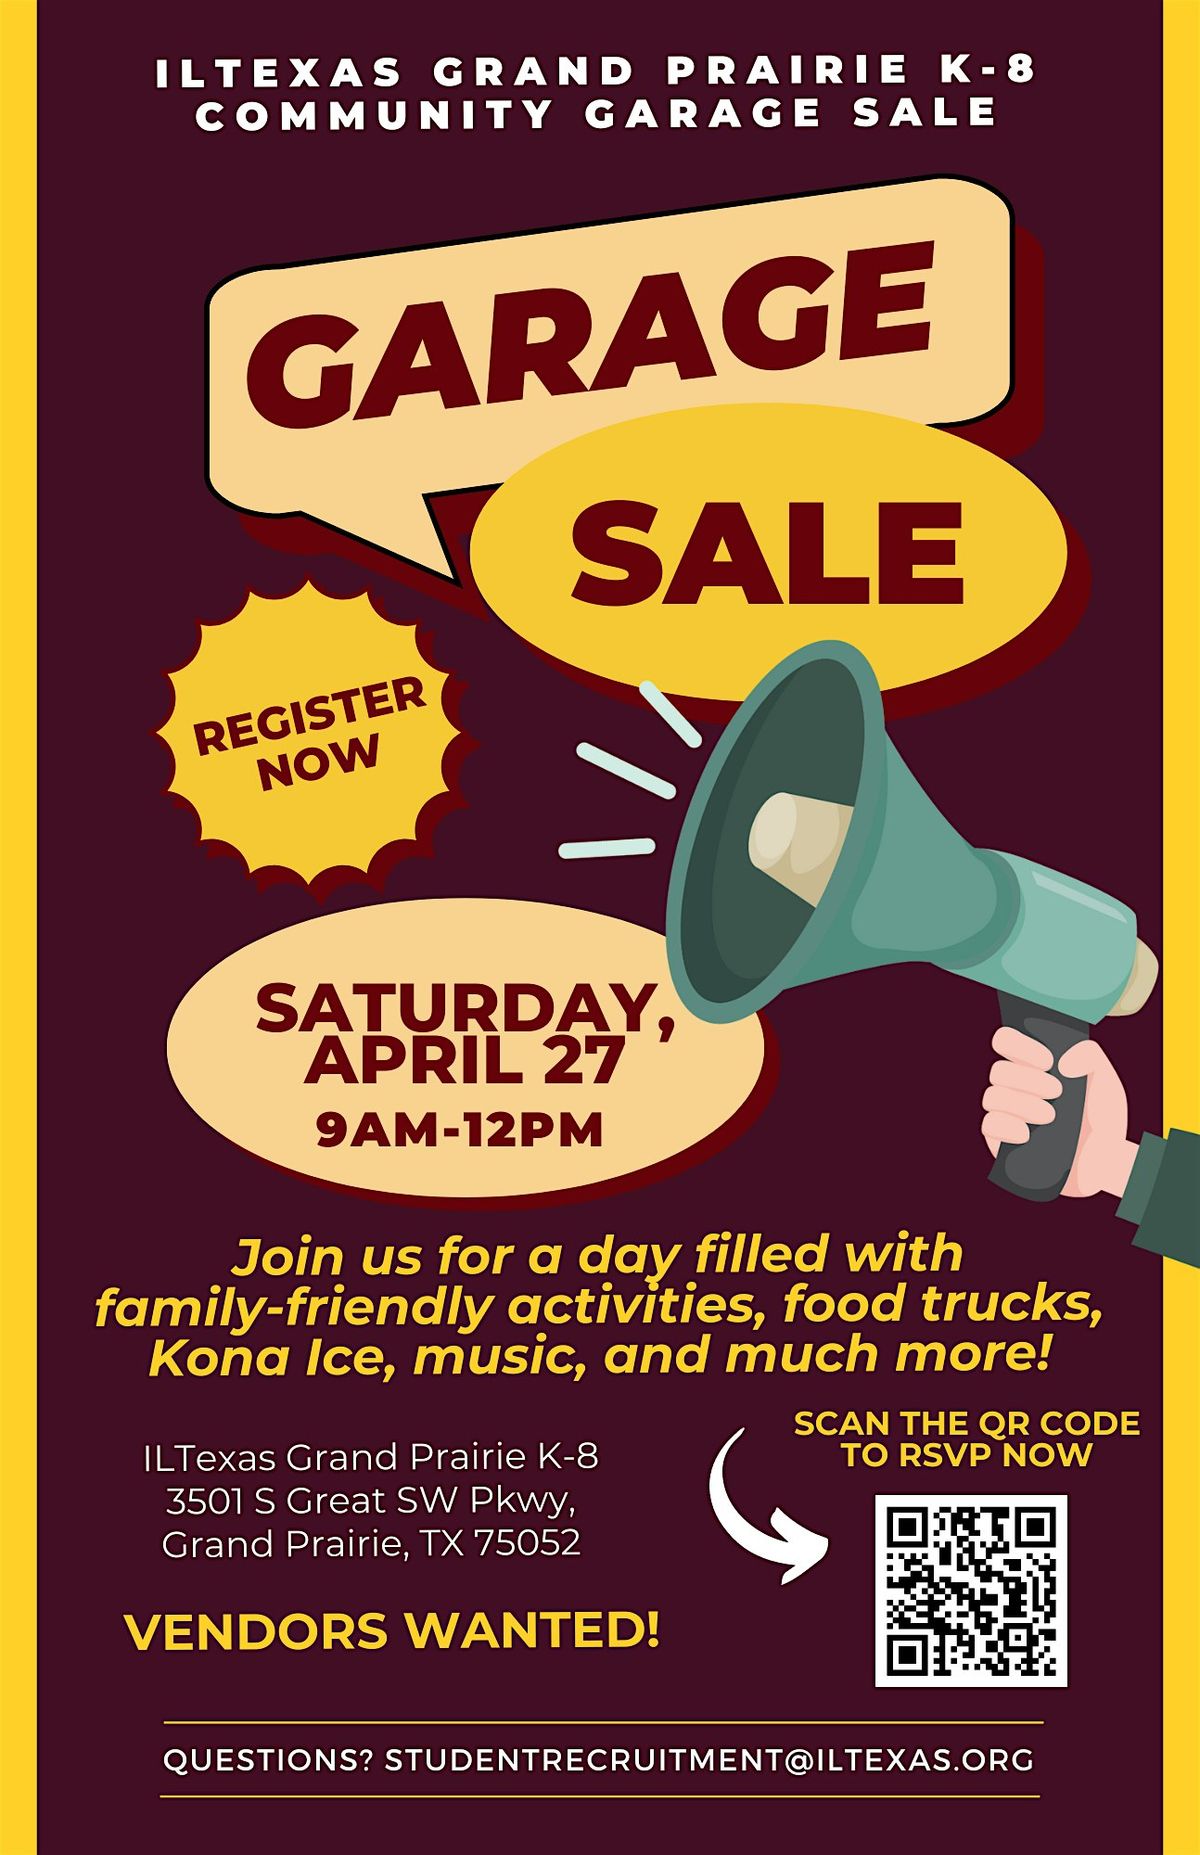 ILTexas Grand Prairie K-8 Community Garage Sale